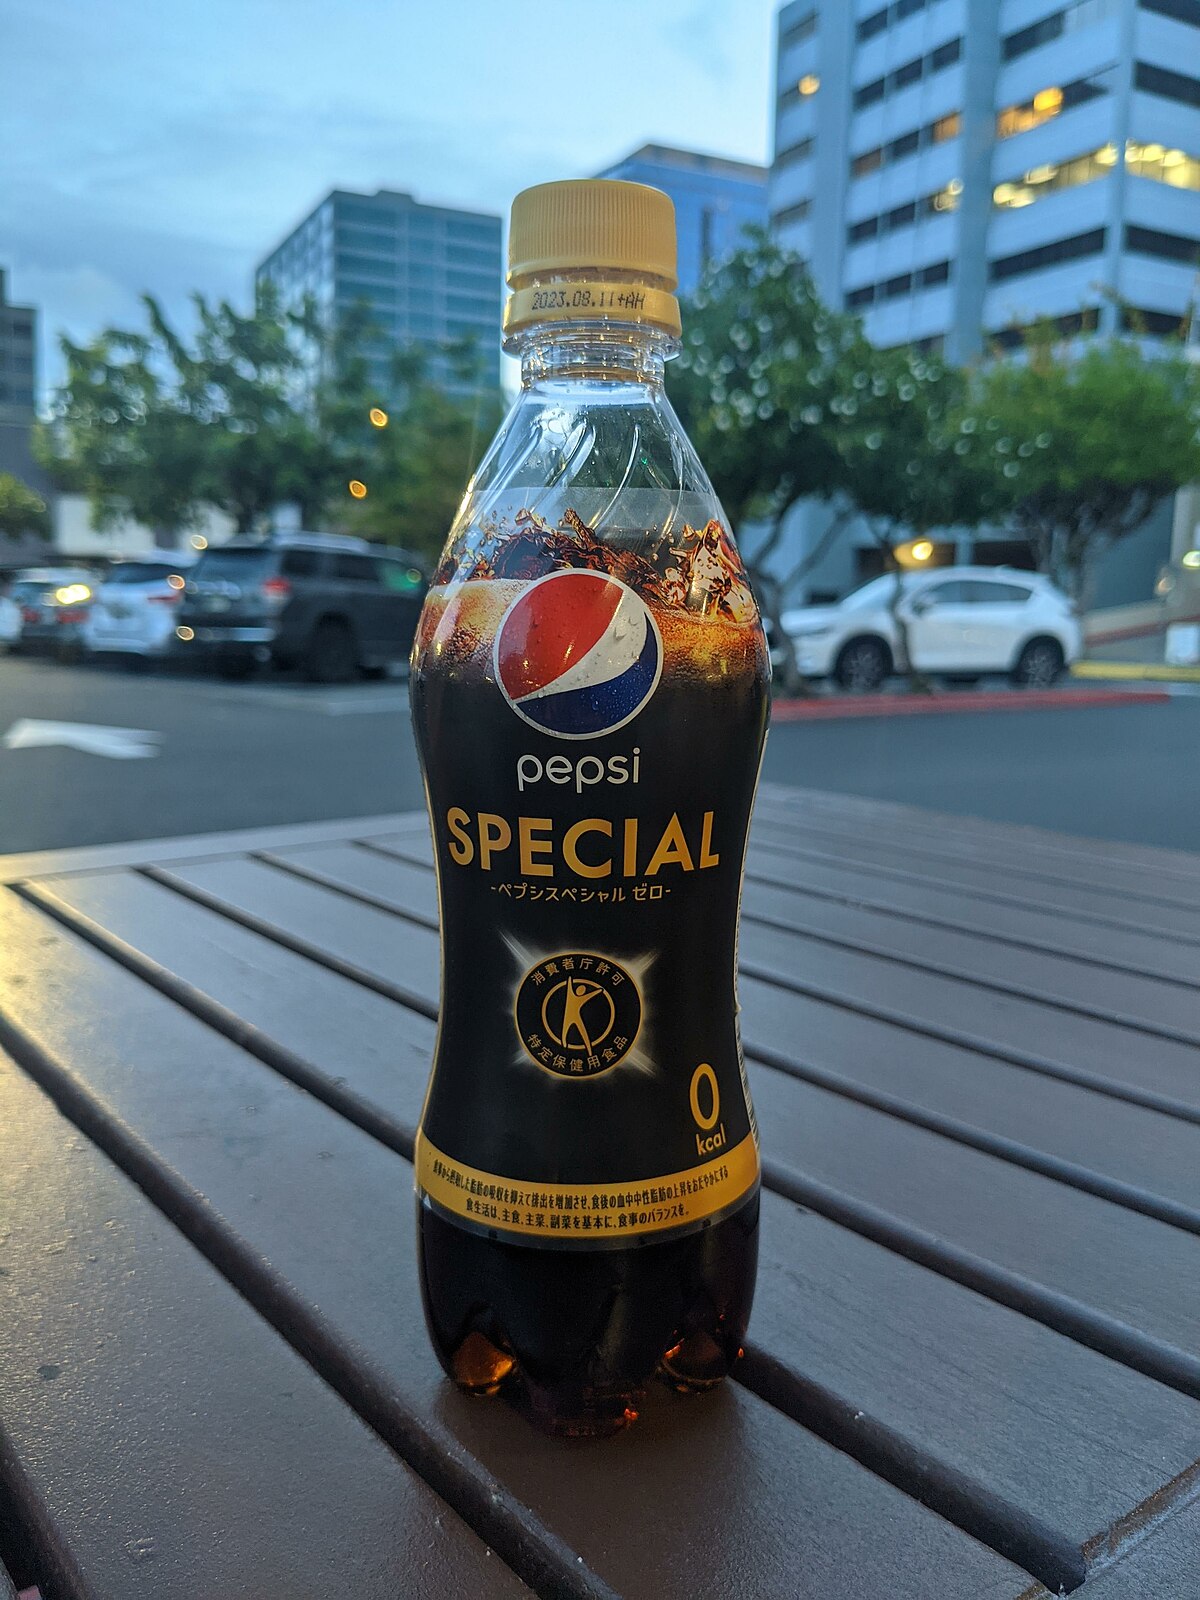 Pepsi Special - Wikipedia